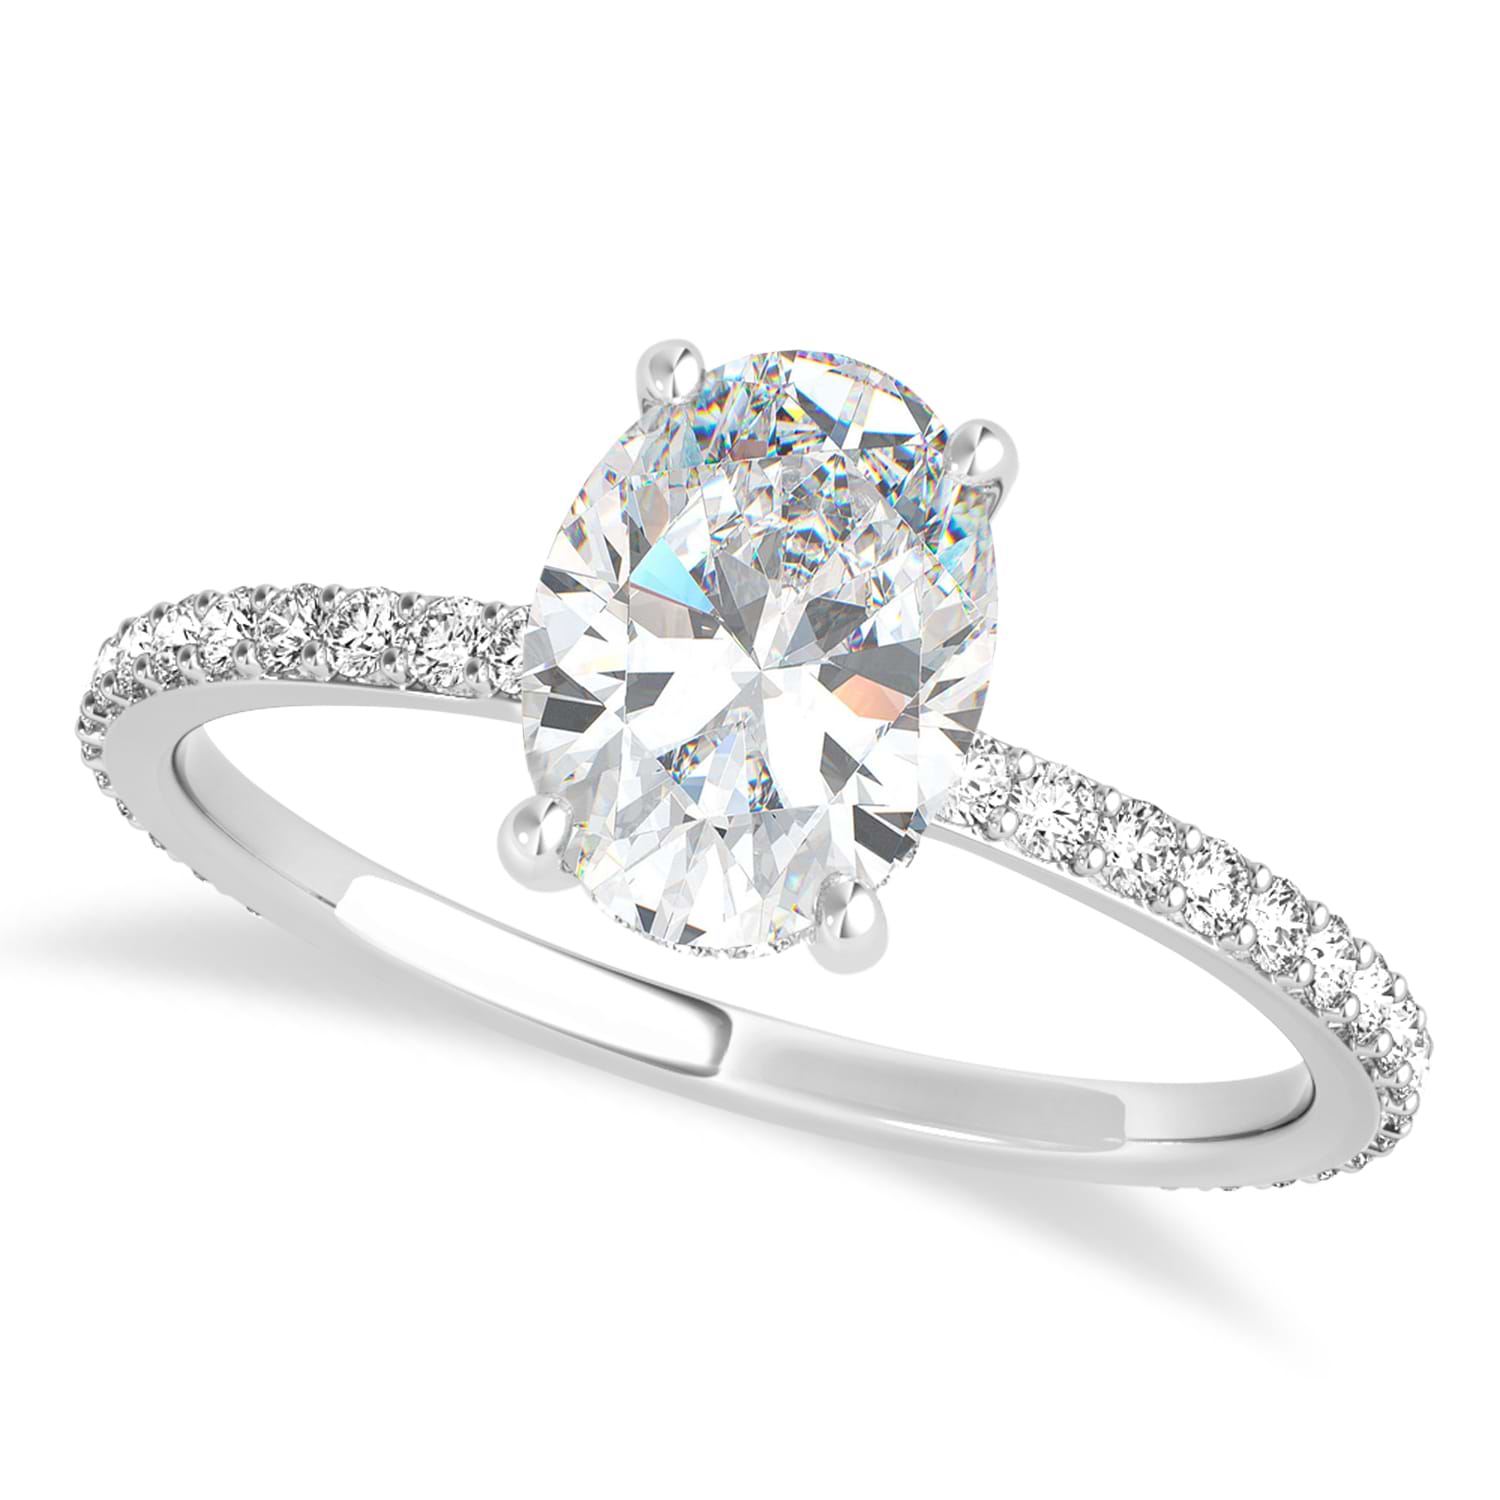 Oval Moissanite & Diamond Hidden Halo Engagement Ring 18k White Gold (0.76ct)